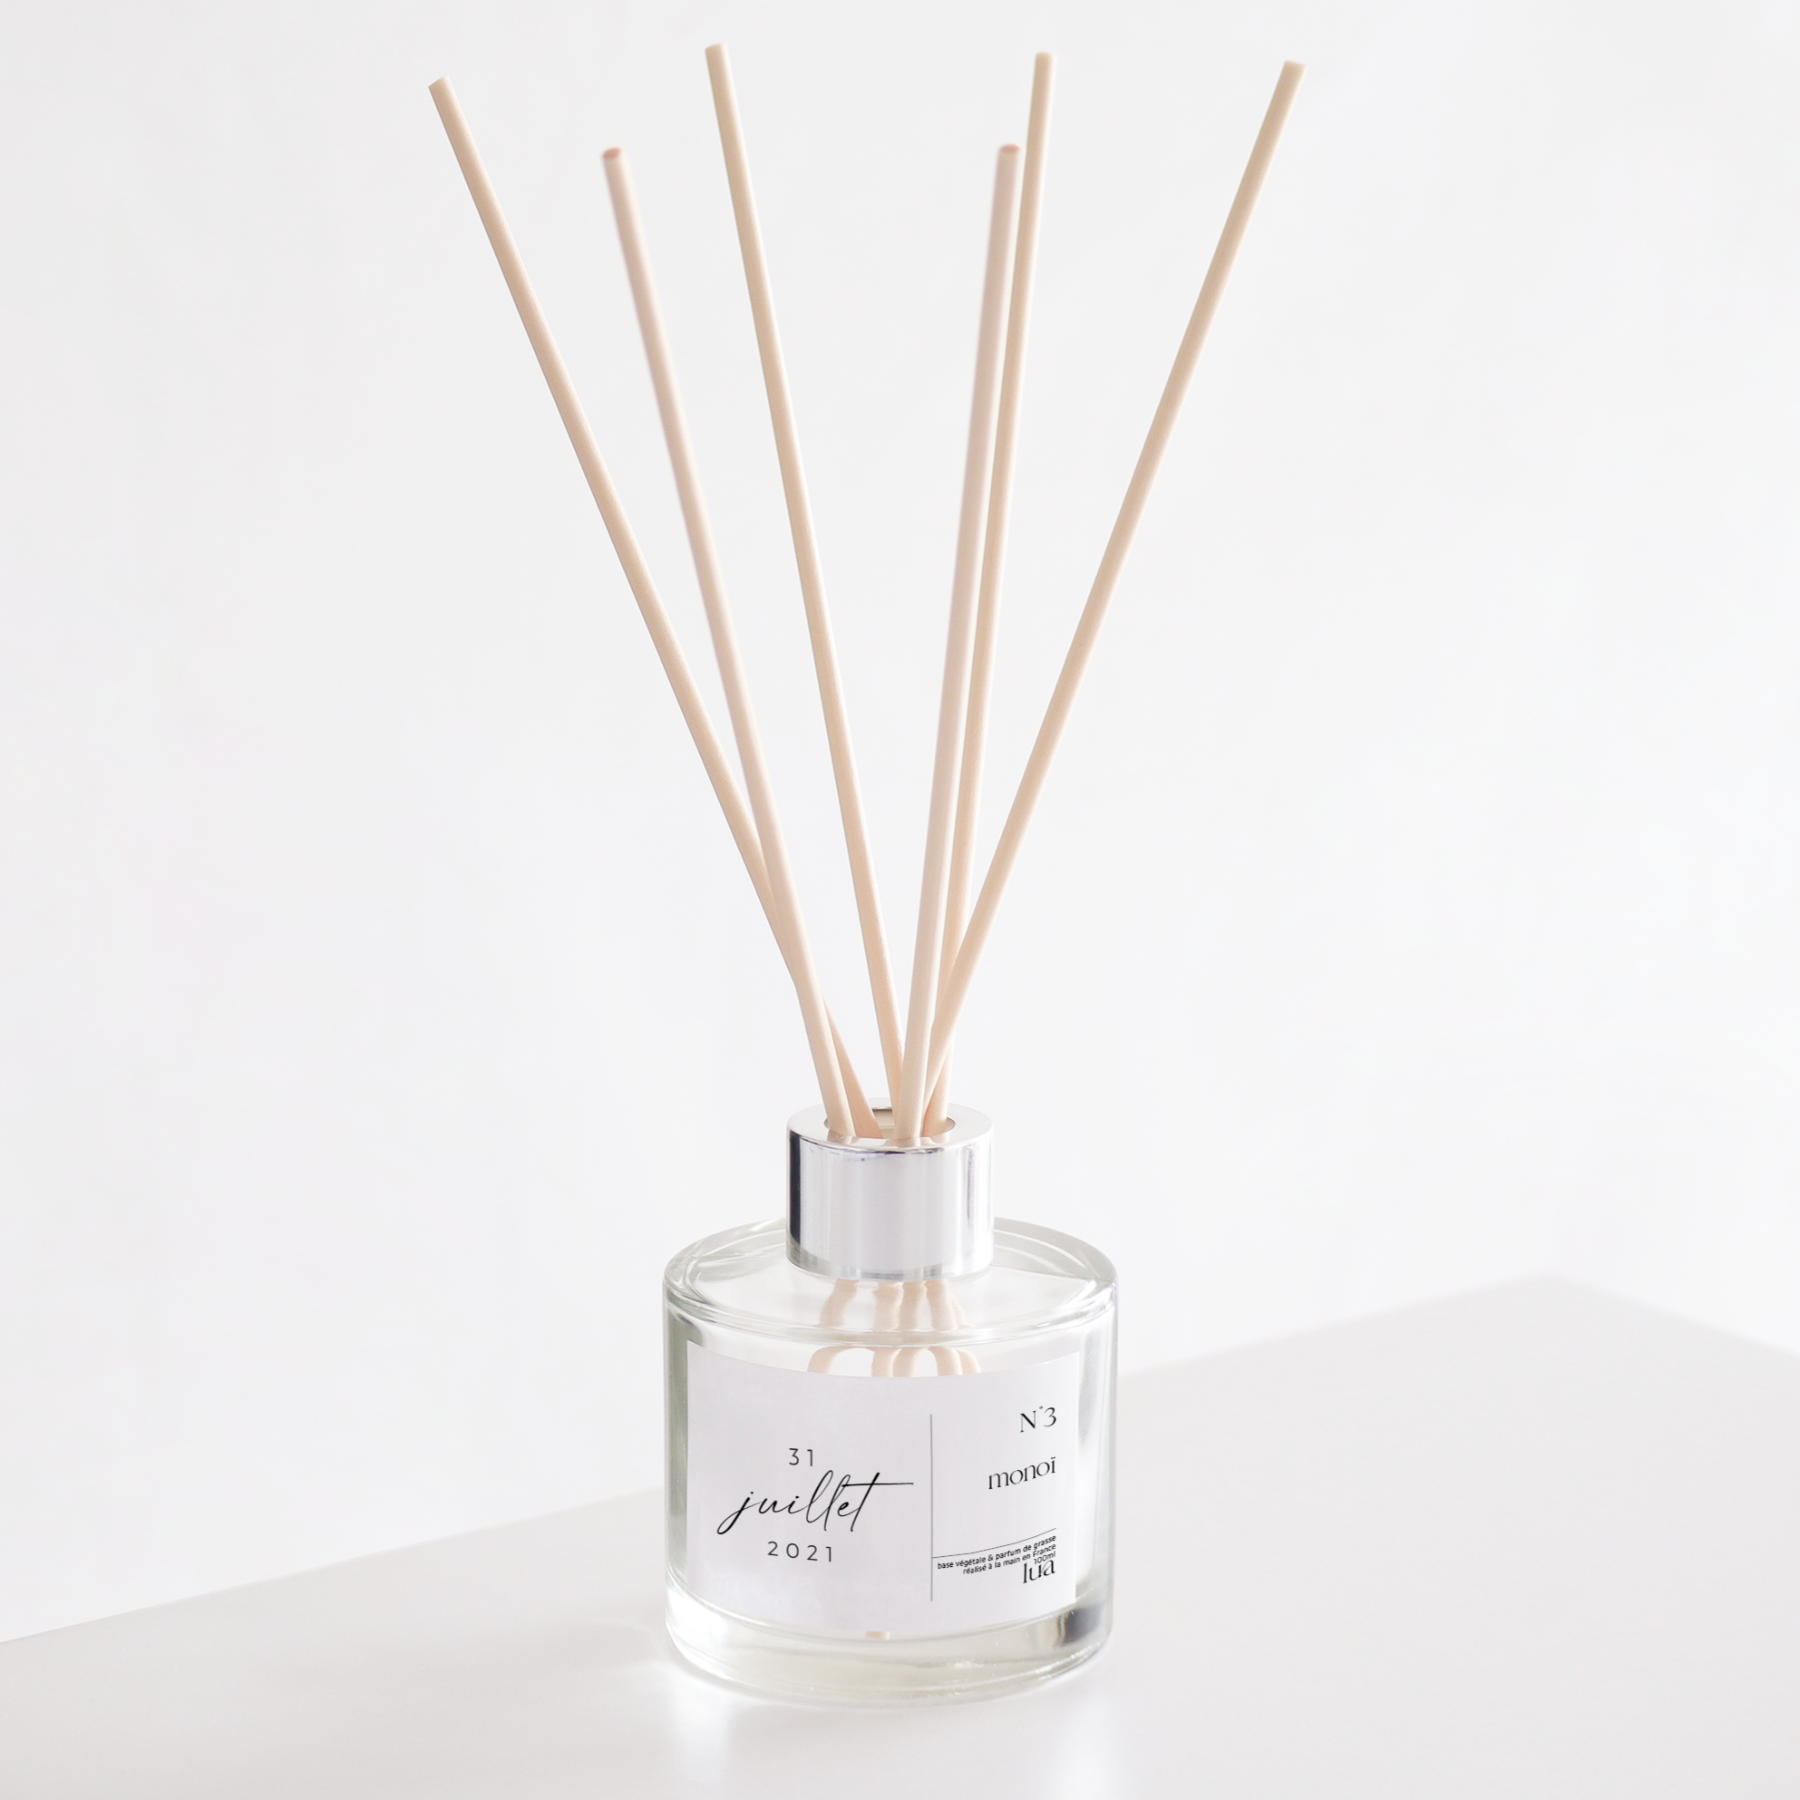 Diffuseur de parfum transparent, parfum monoï, base végétale et parfum de Grasse. 